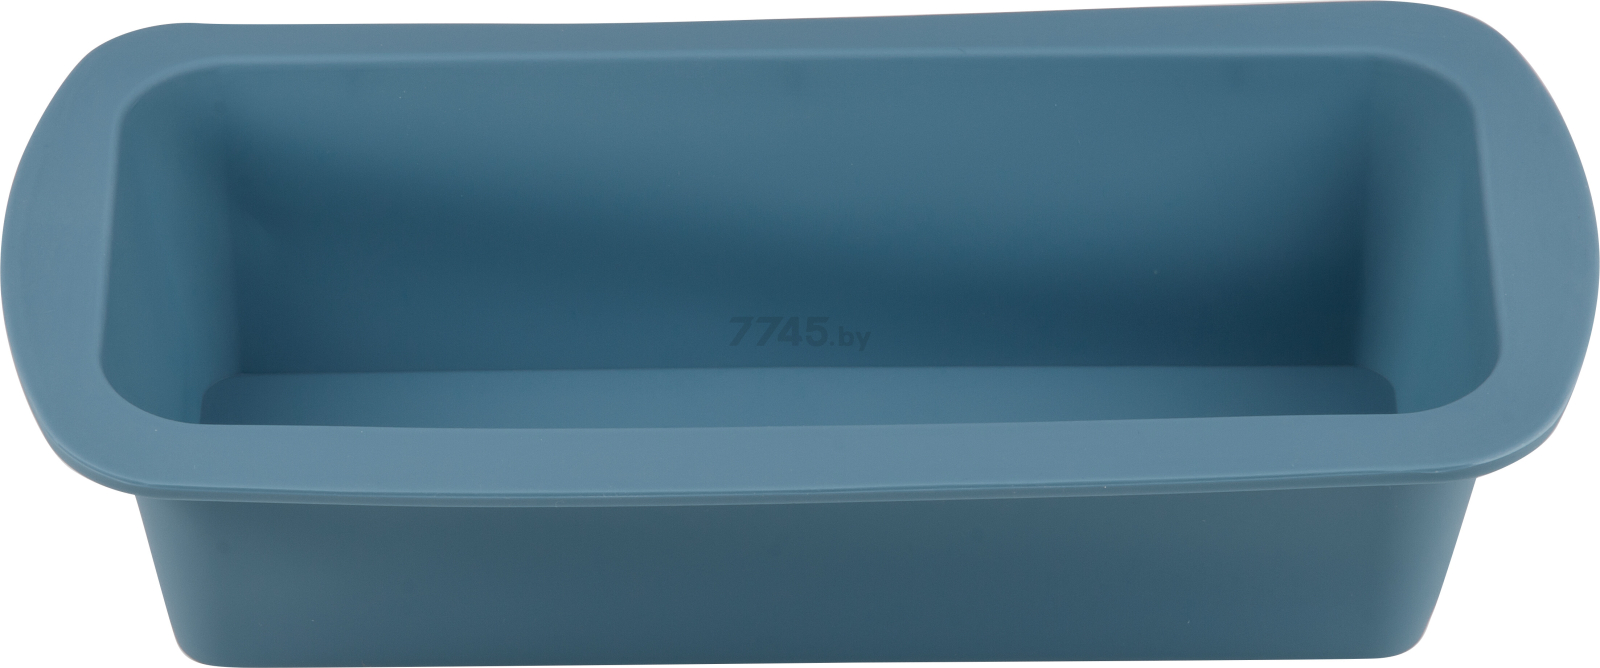 Форма для выпечки силиконовая прямоугольная 27х13,5х6 см PERFECTO LINEA Bluestone серо-голубой (20-000218)